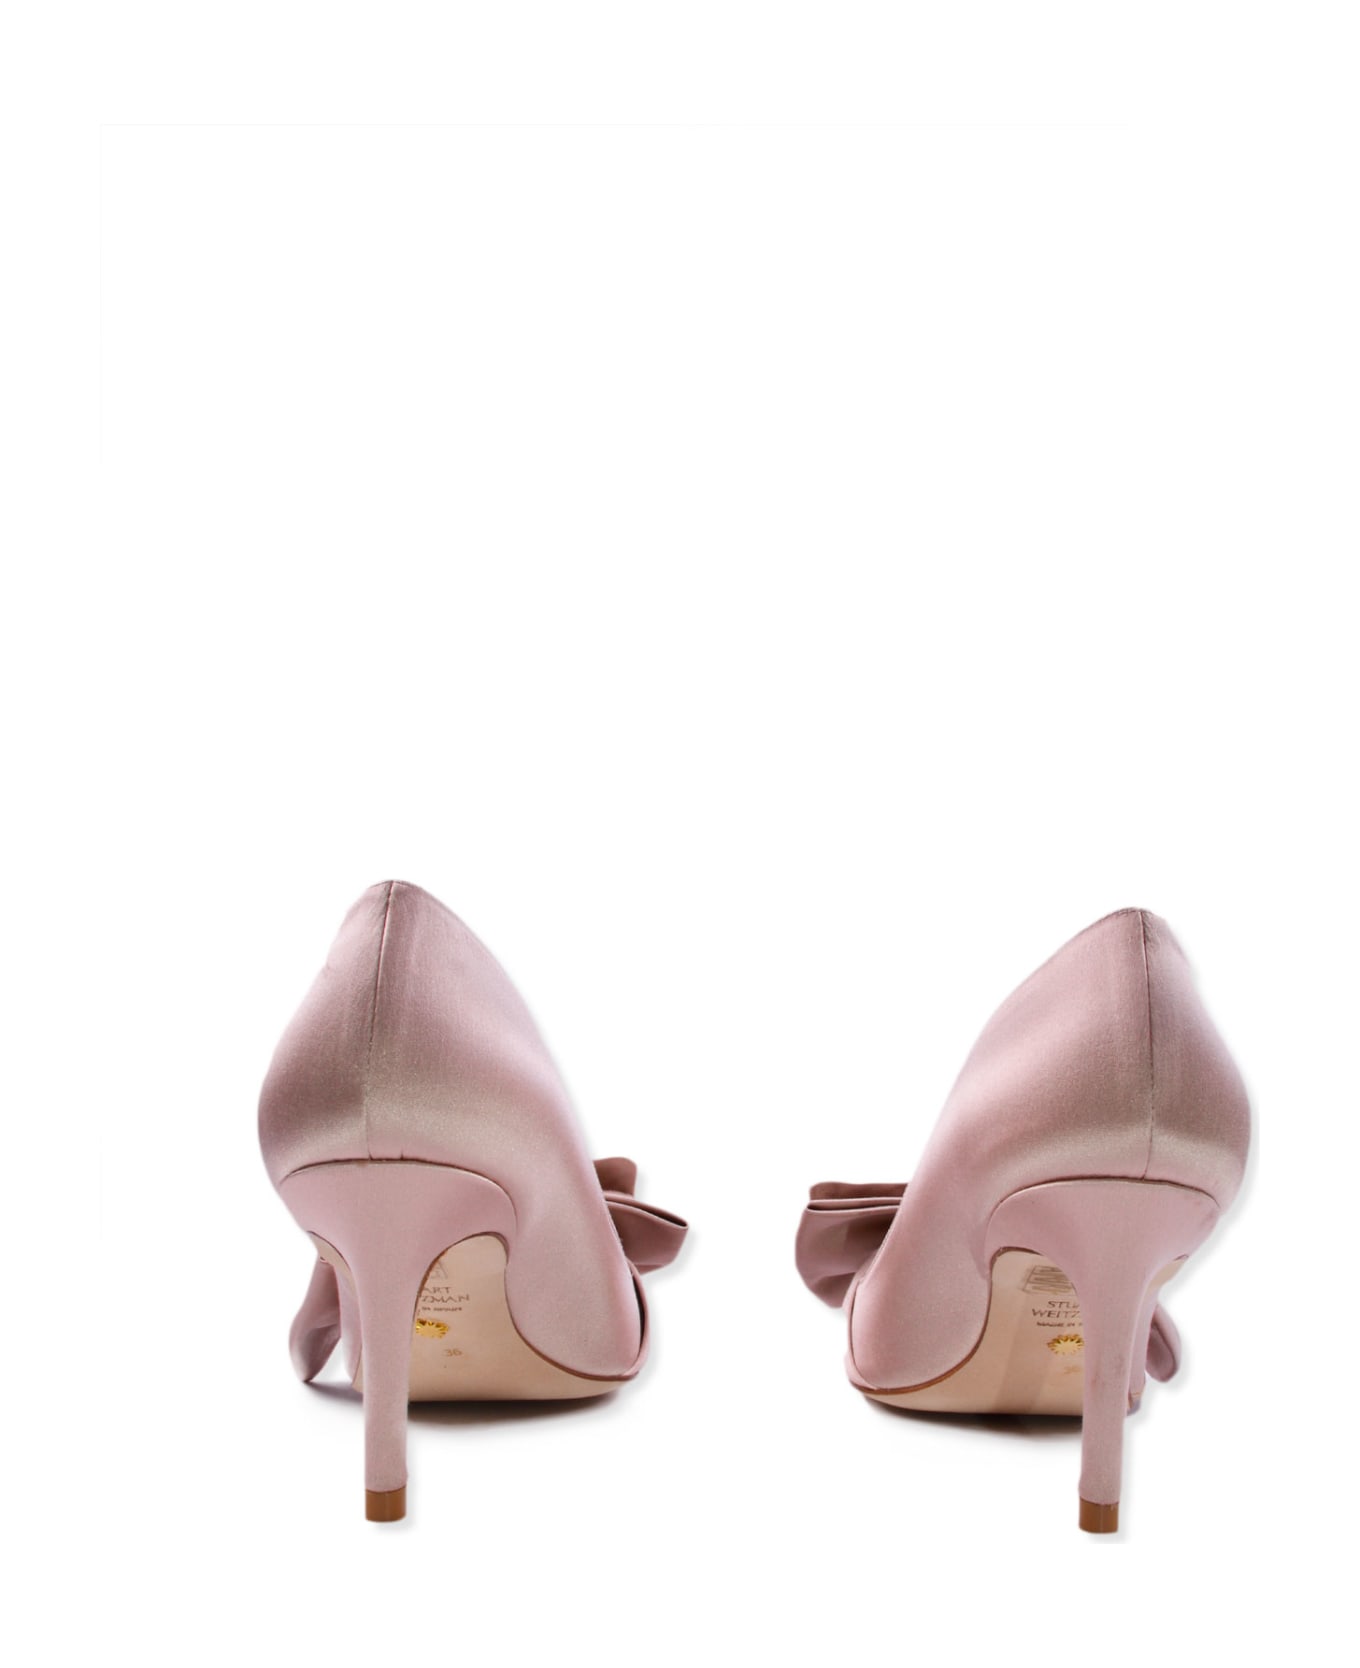 Stuart Weitzman Shoes With Heels - Pink